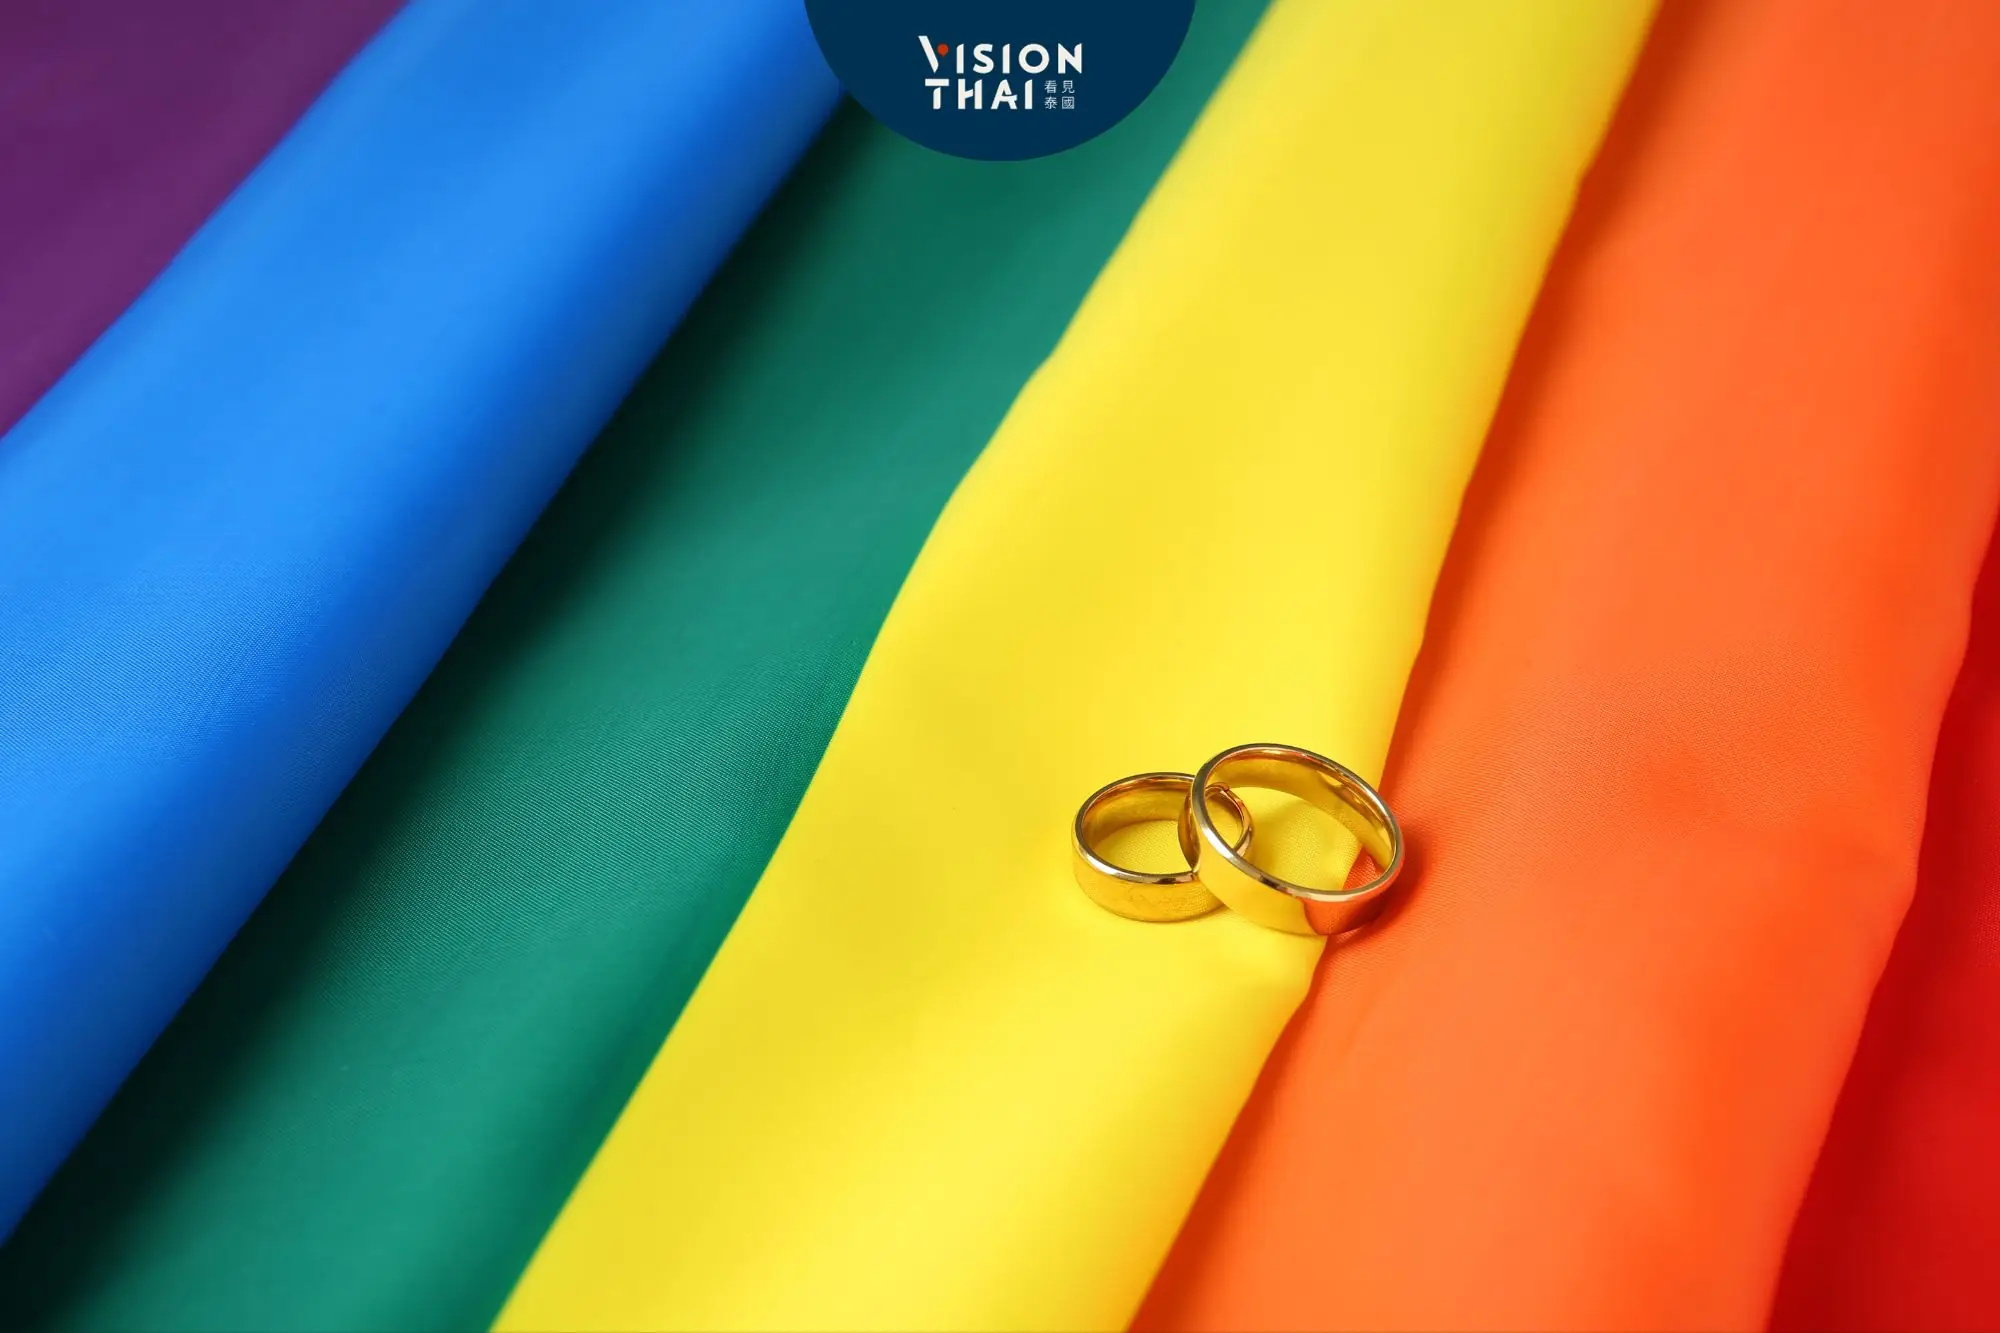 泰國同婚有望！婚姻平權法案下月審議（圖片來源：Vision Thai 看見泰國）